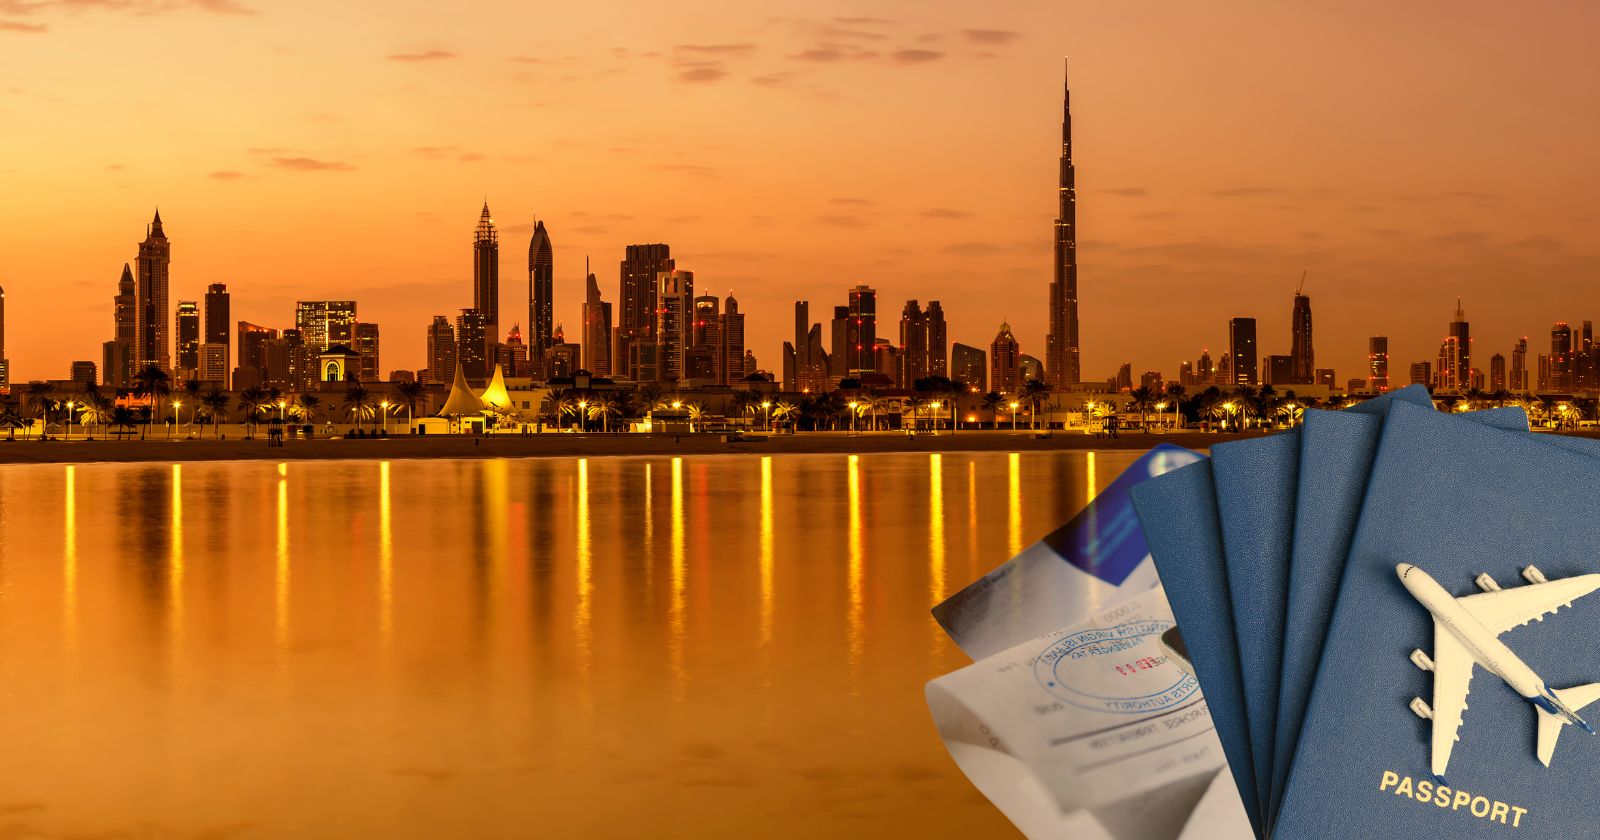 UAE Golden Visa: Your Golden Ticket to Prosperity